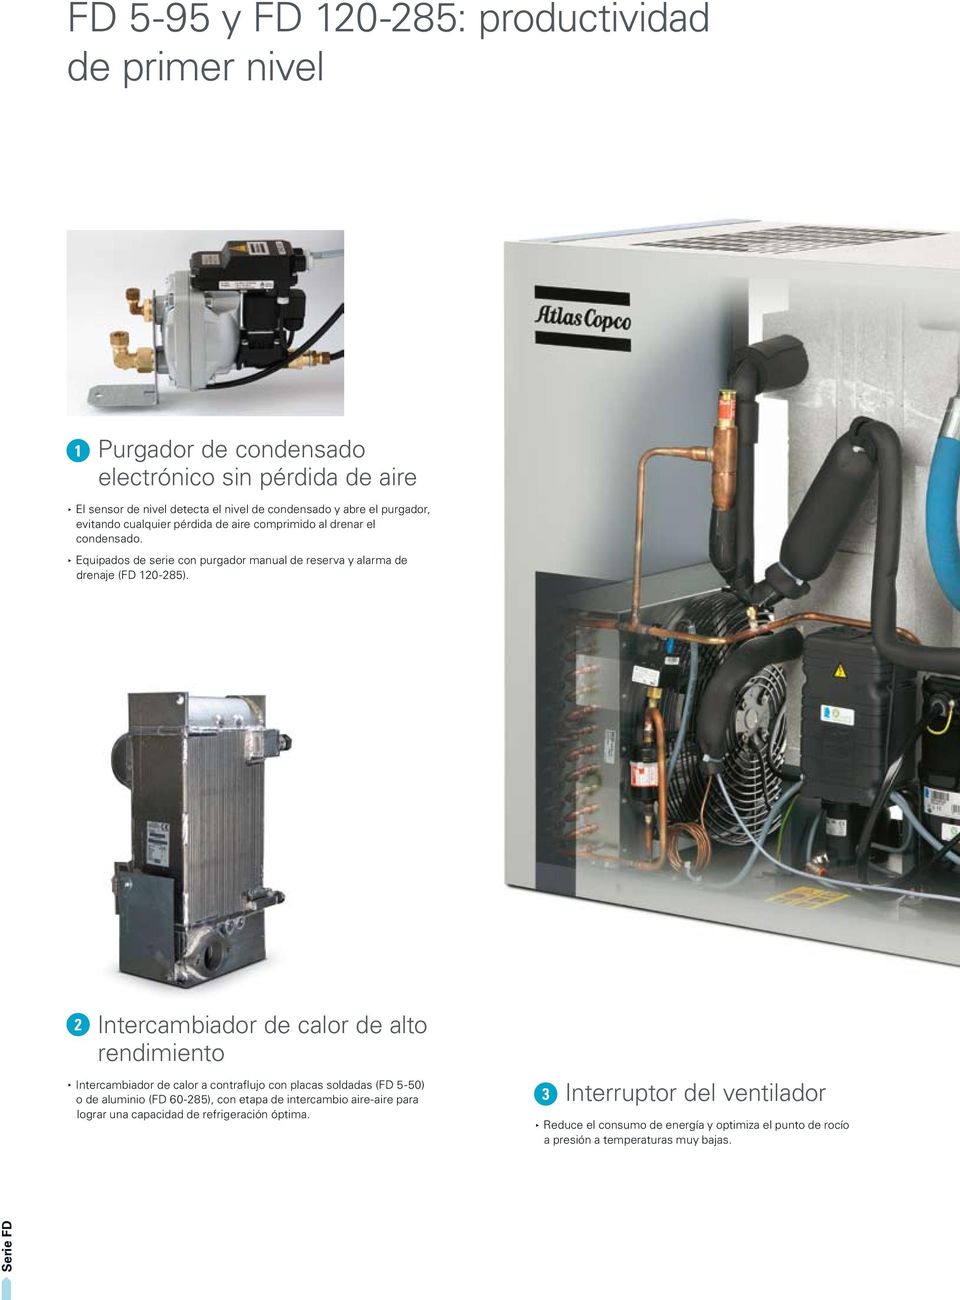 2 Intercambiador de calor de alto rendimiento Intercambiador de calor a contraflujo con placas soldadas (FD 5-50) o de aluminio (FD 60-285), con etapa de intercambio